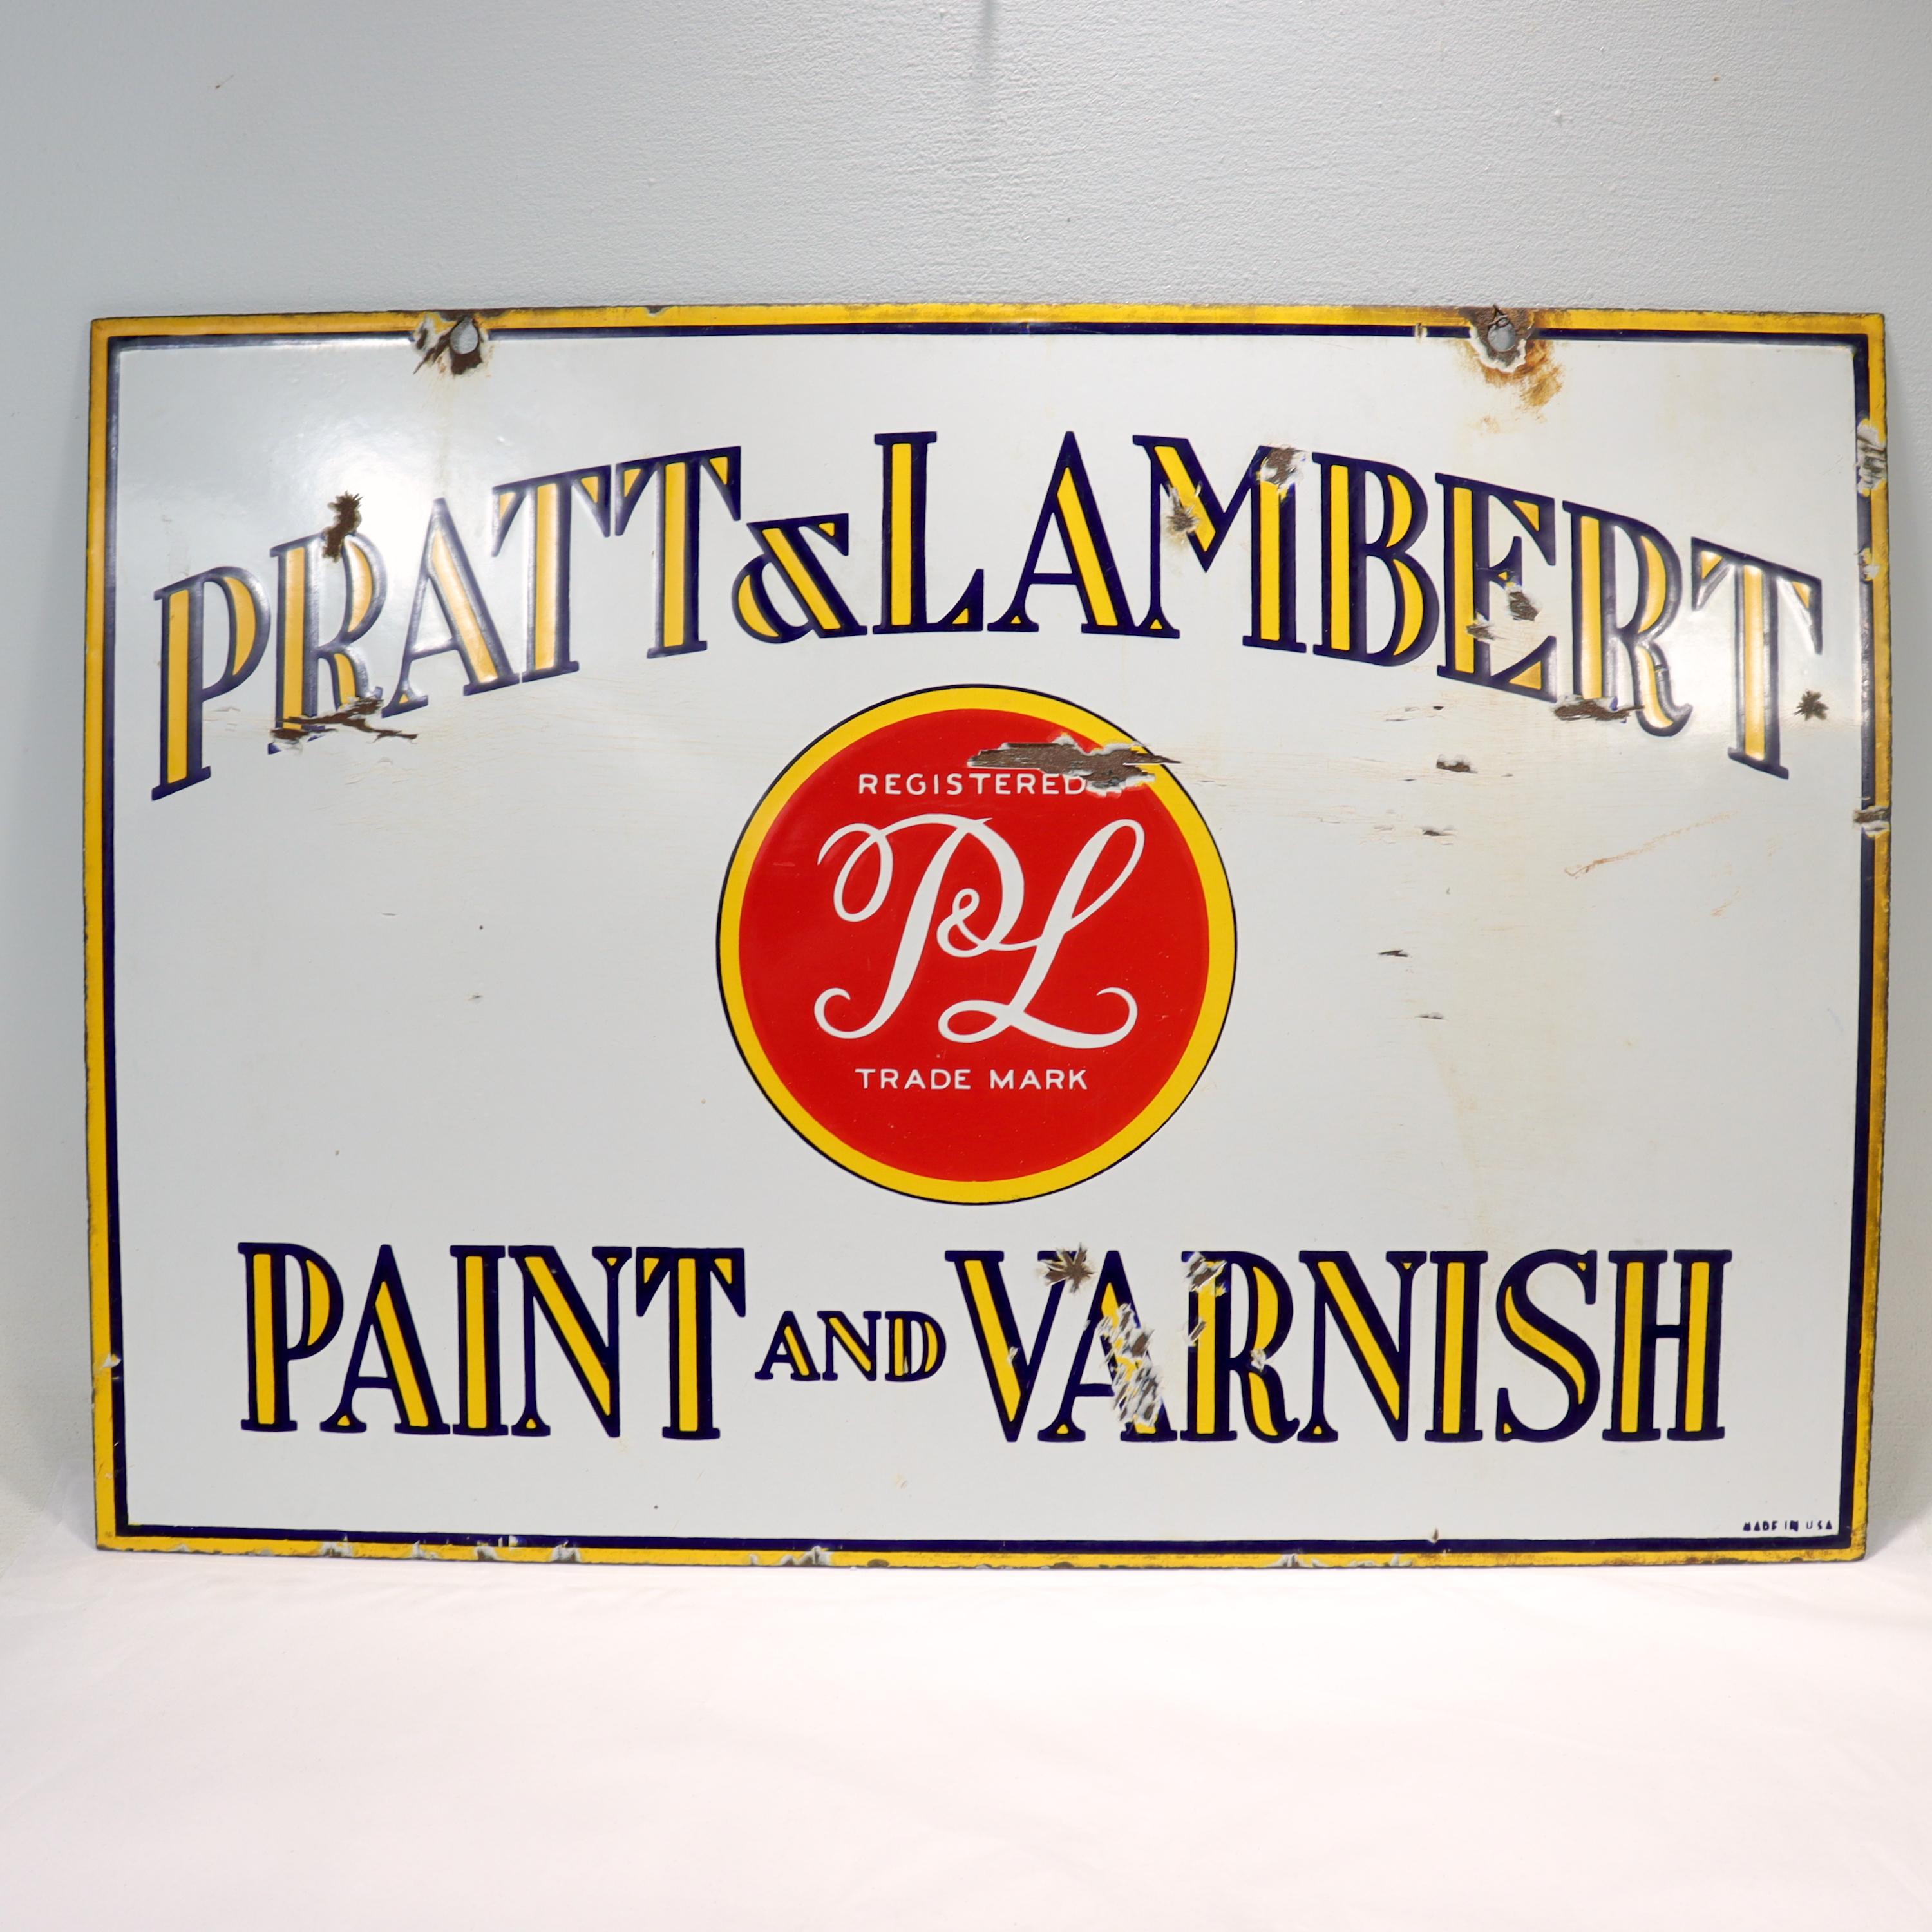 pratt and lambert varnish